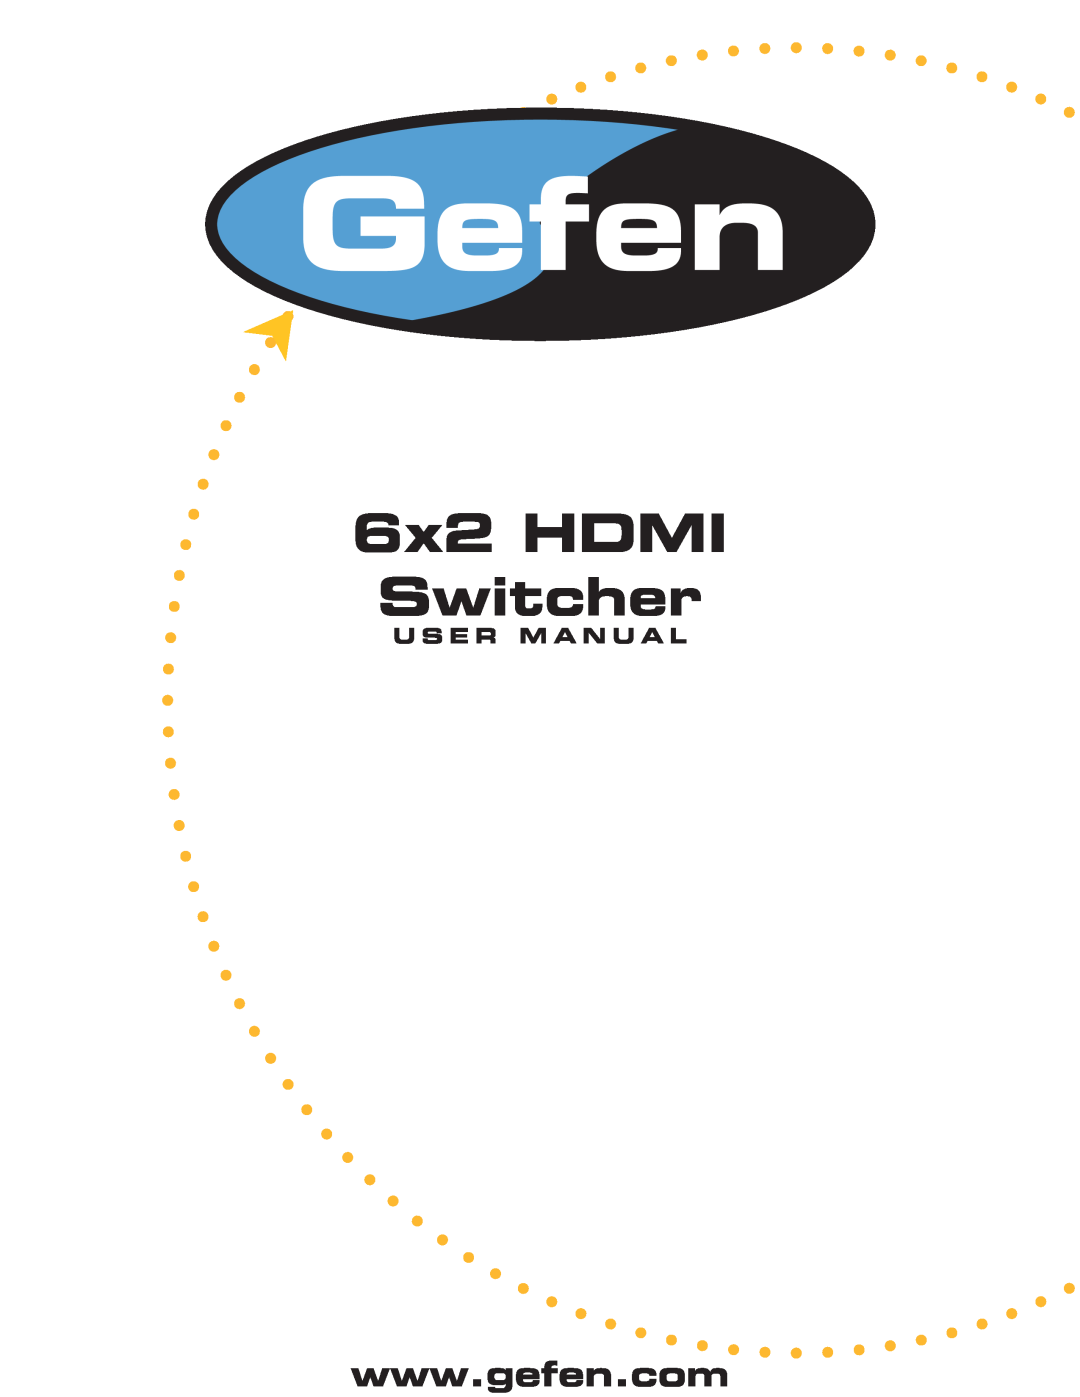 Gefen user manual U S E R M A N U A L, 6x2 HDMI Switcher 